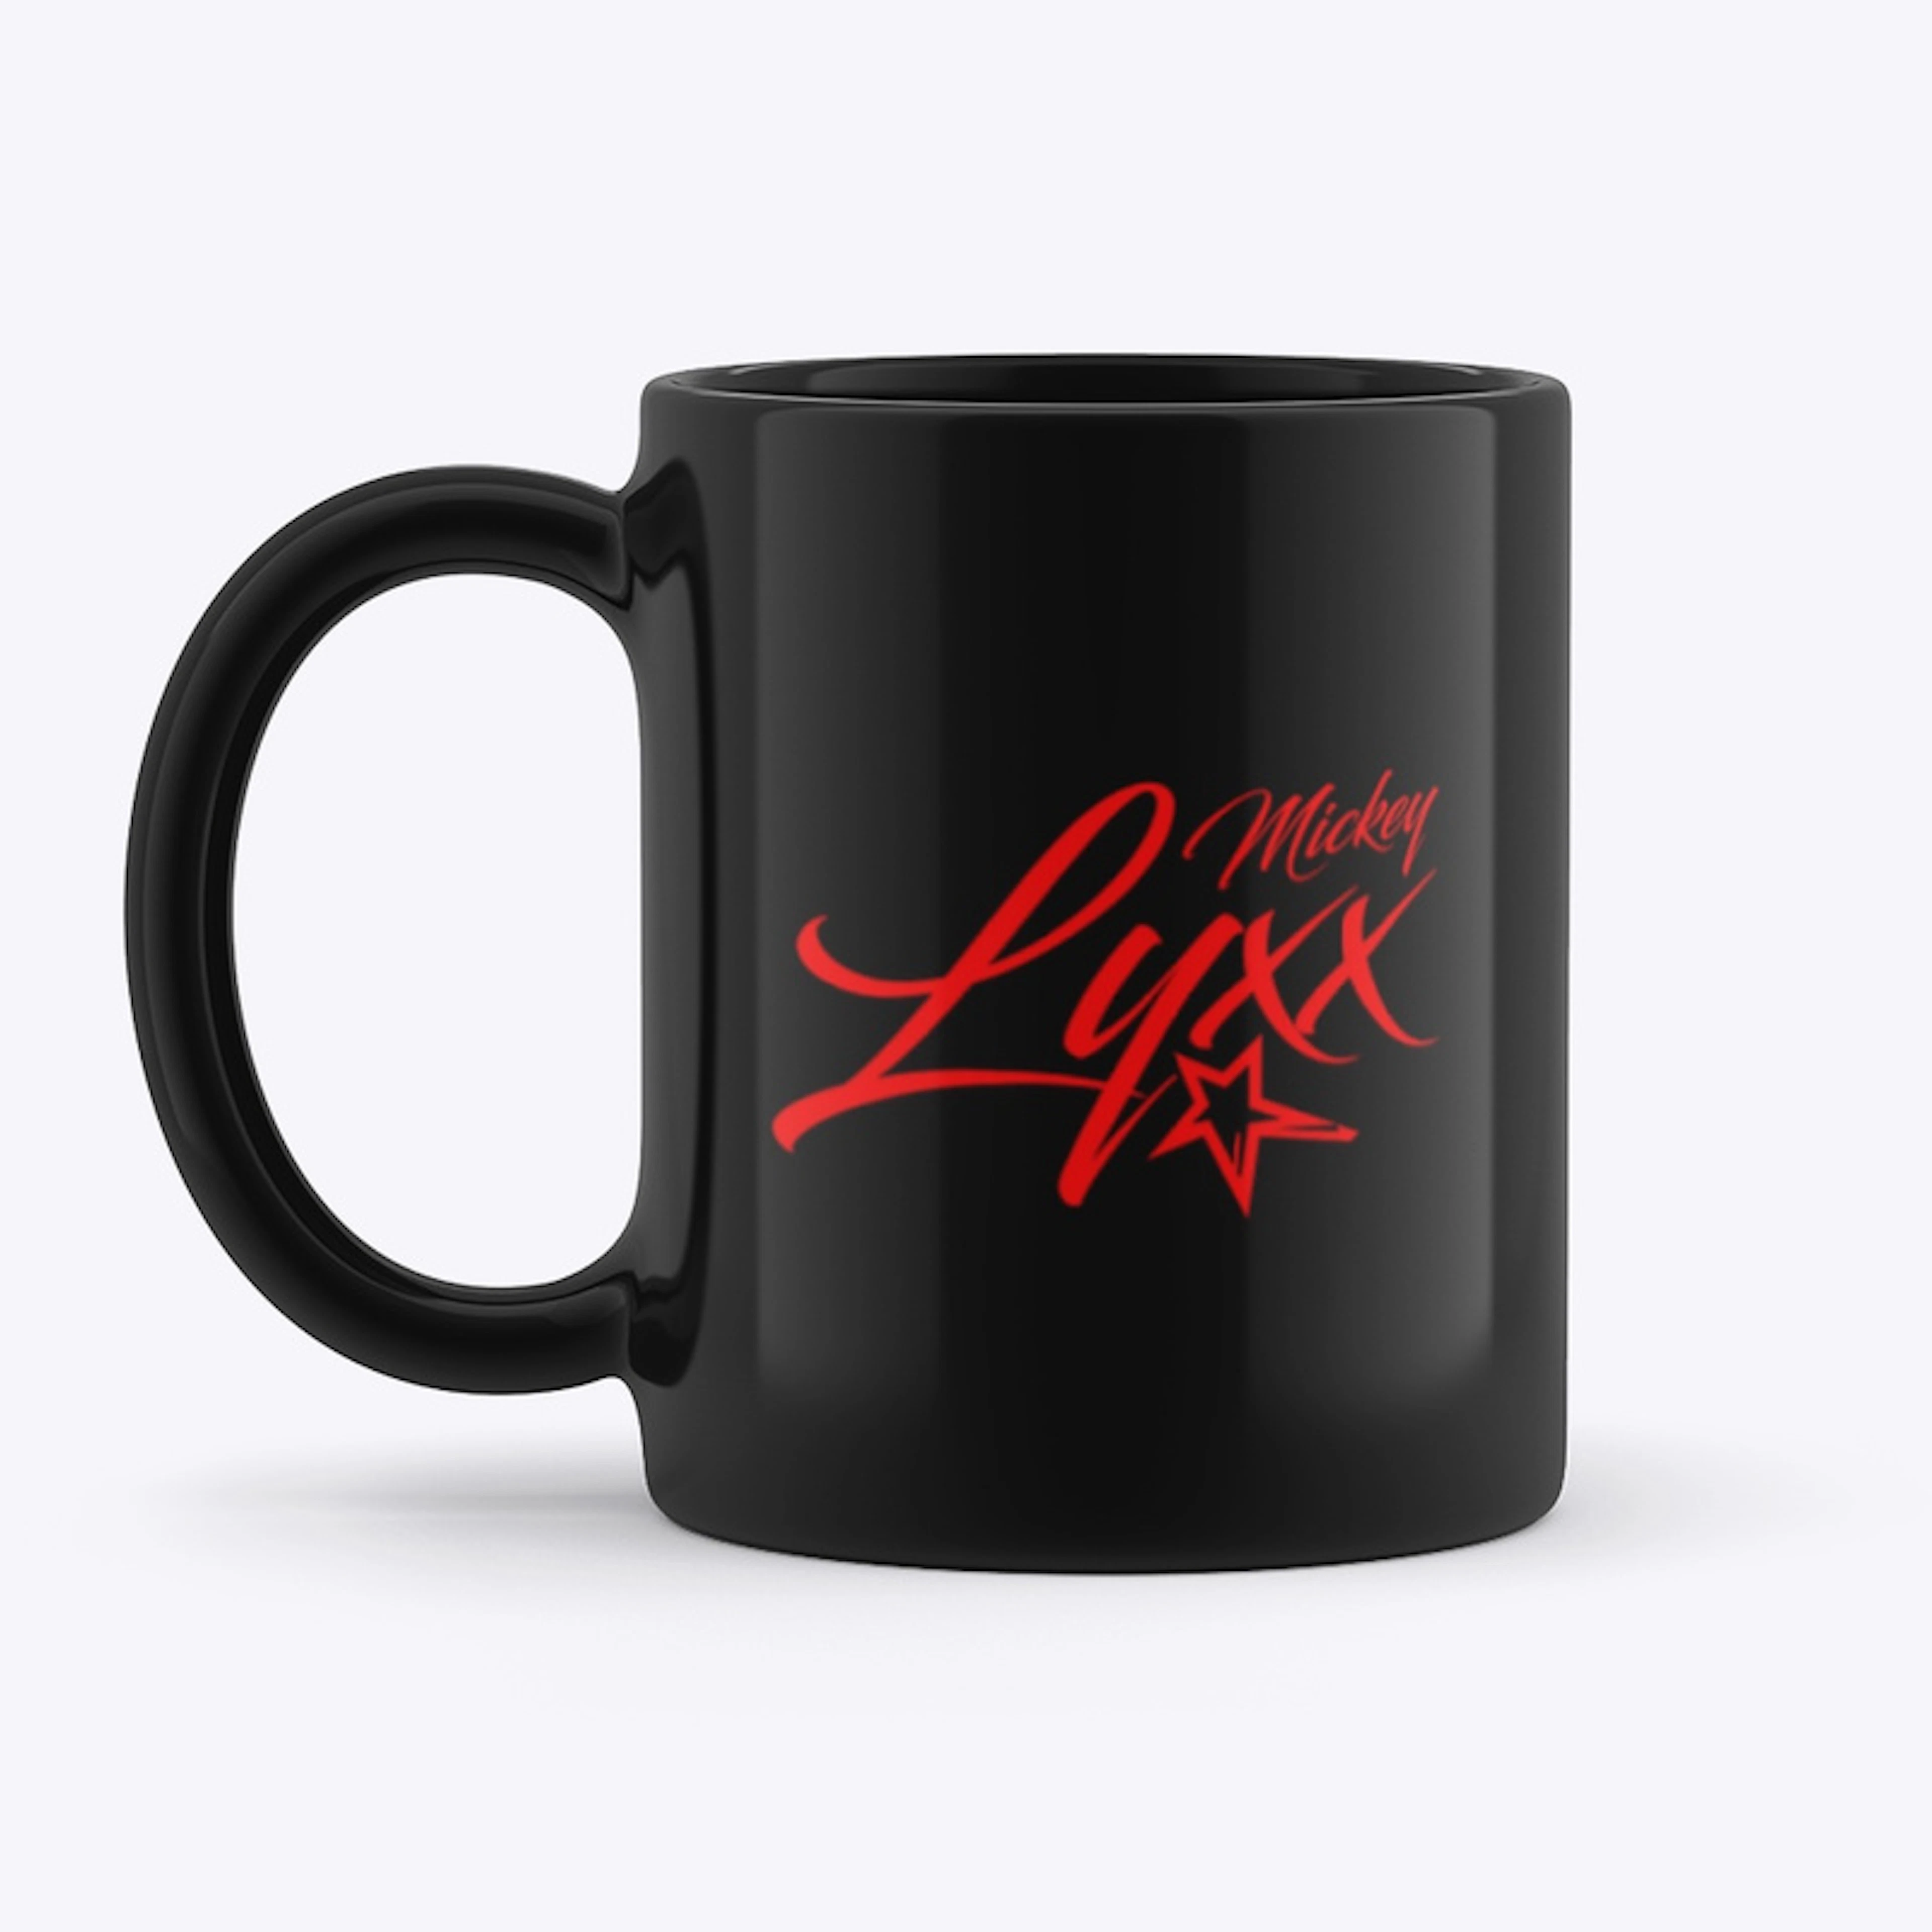 Mickey Lyxx Mug